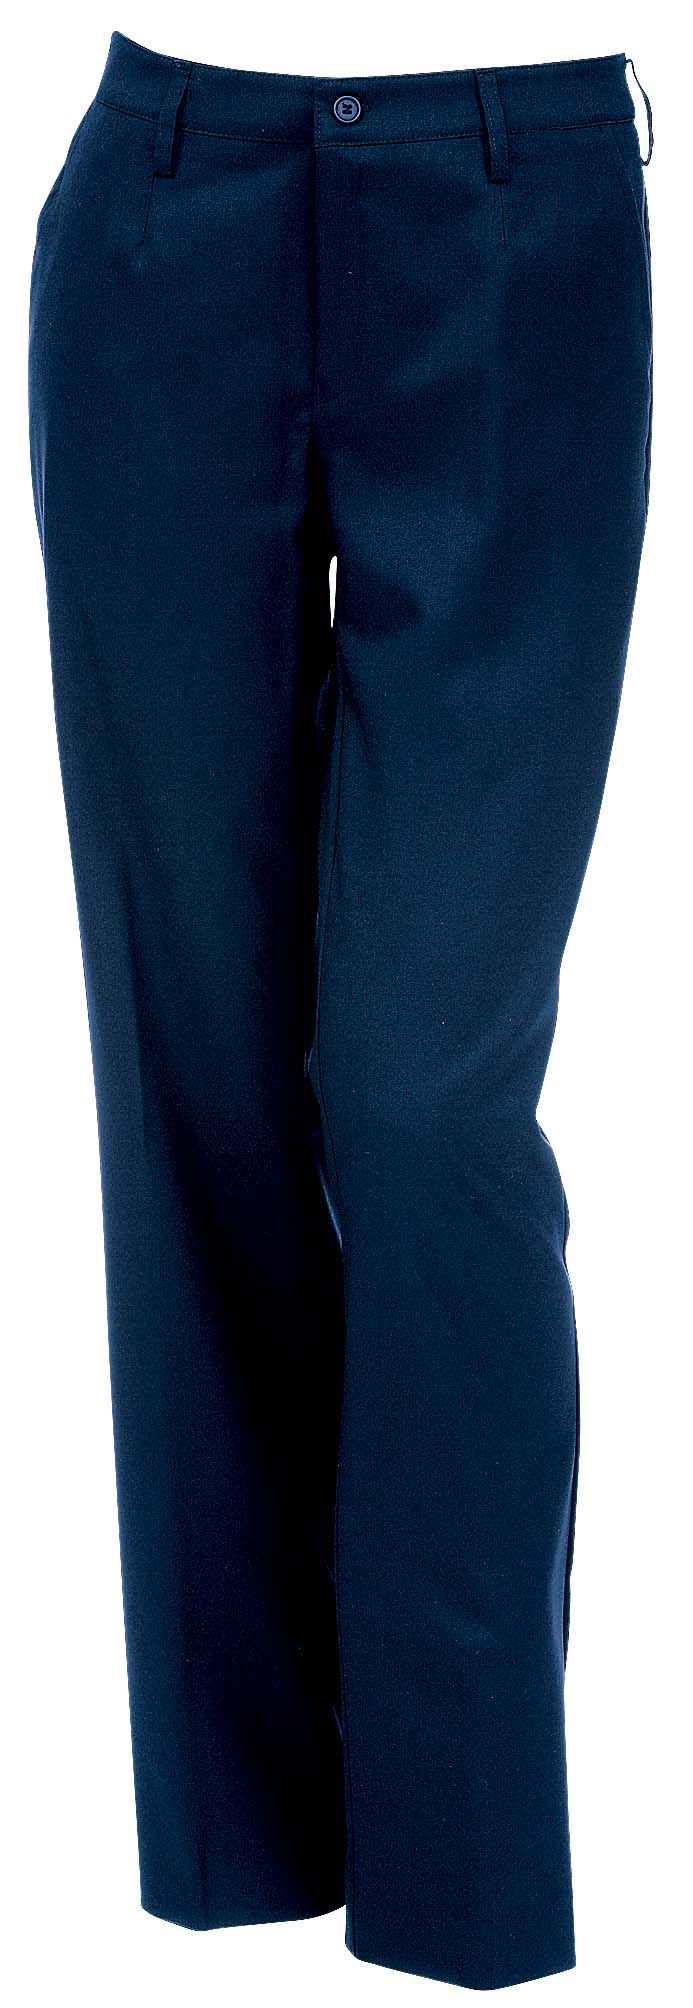 Ajattomat, tyylikkäät naisten housut joustavaa ja kestävää villasekoitetta. Housuissa vyönlenkit, sivutaskut ja polvisilkit. Koot: C32 - C52